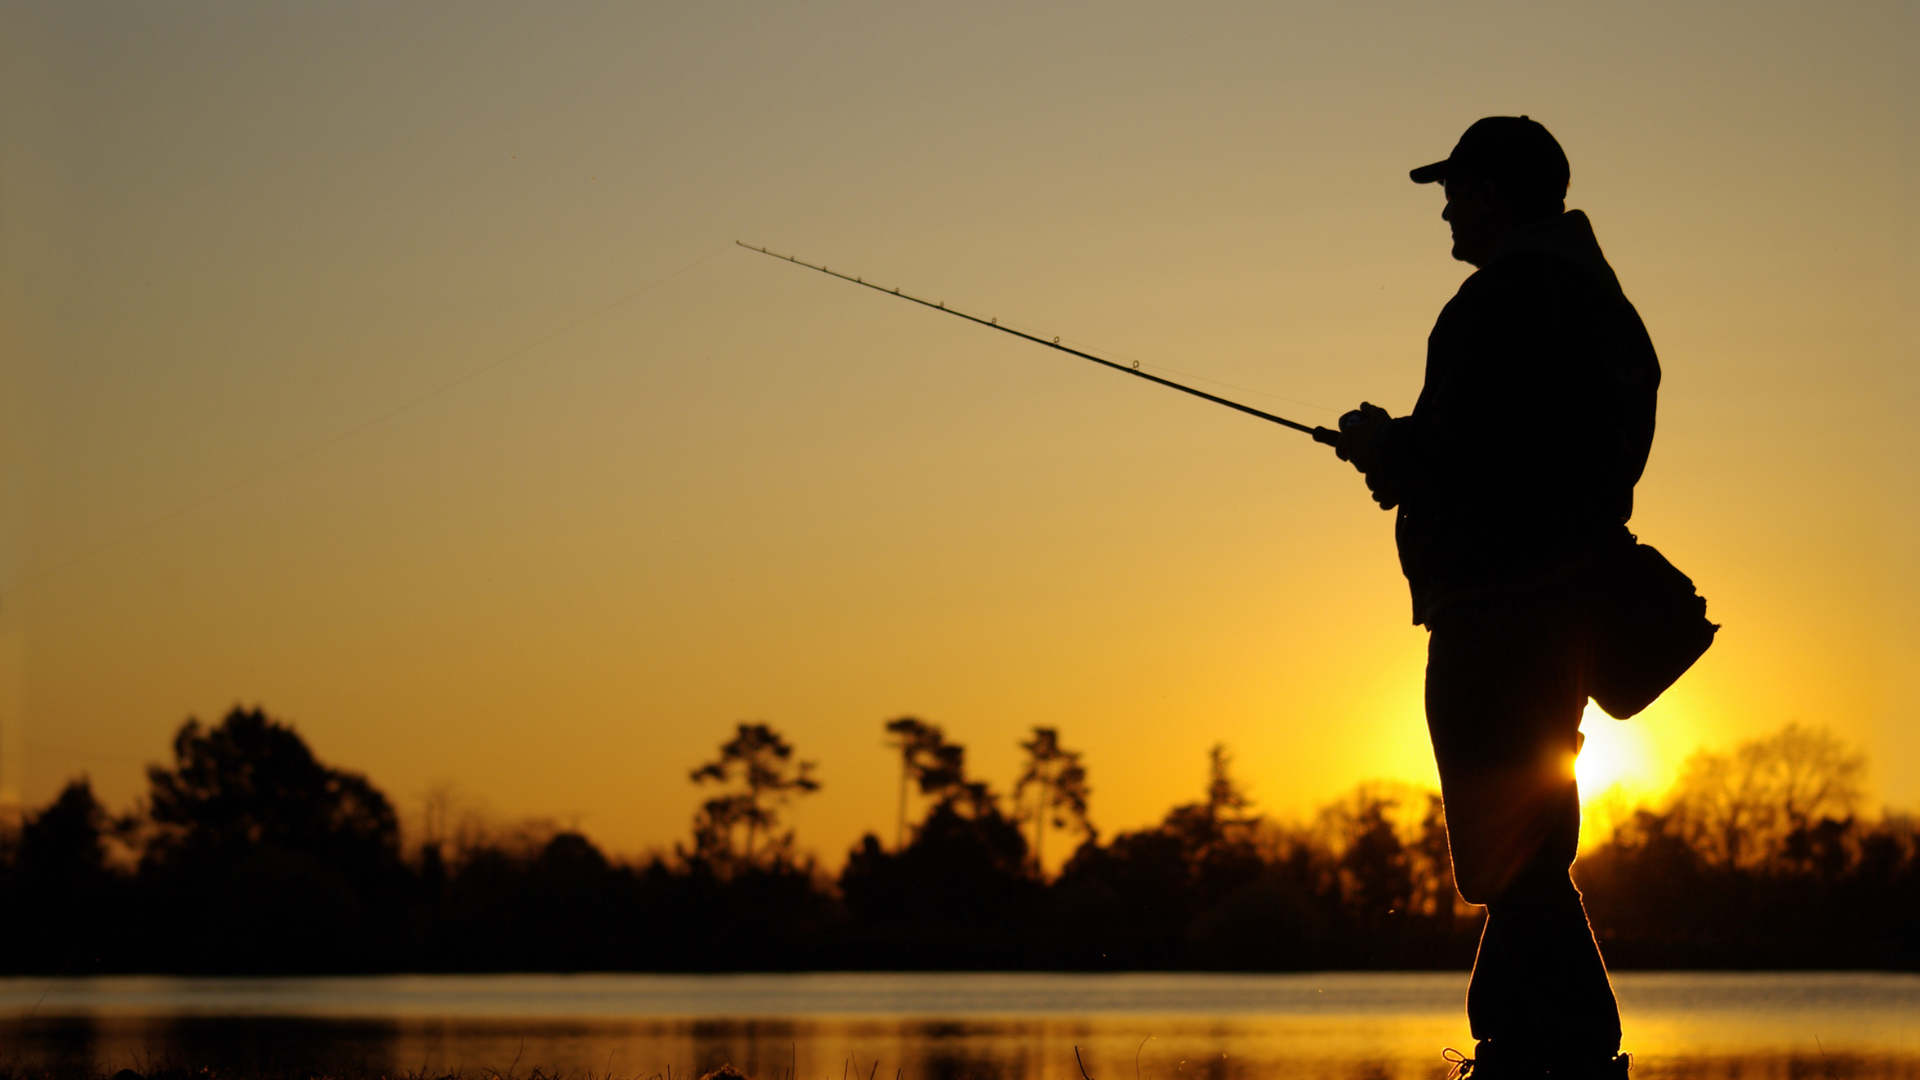 Man fishing during sun set